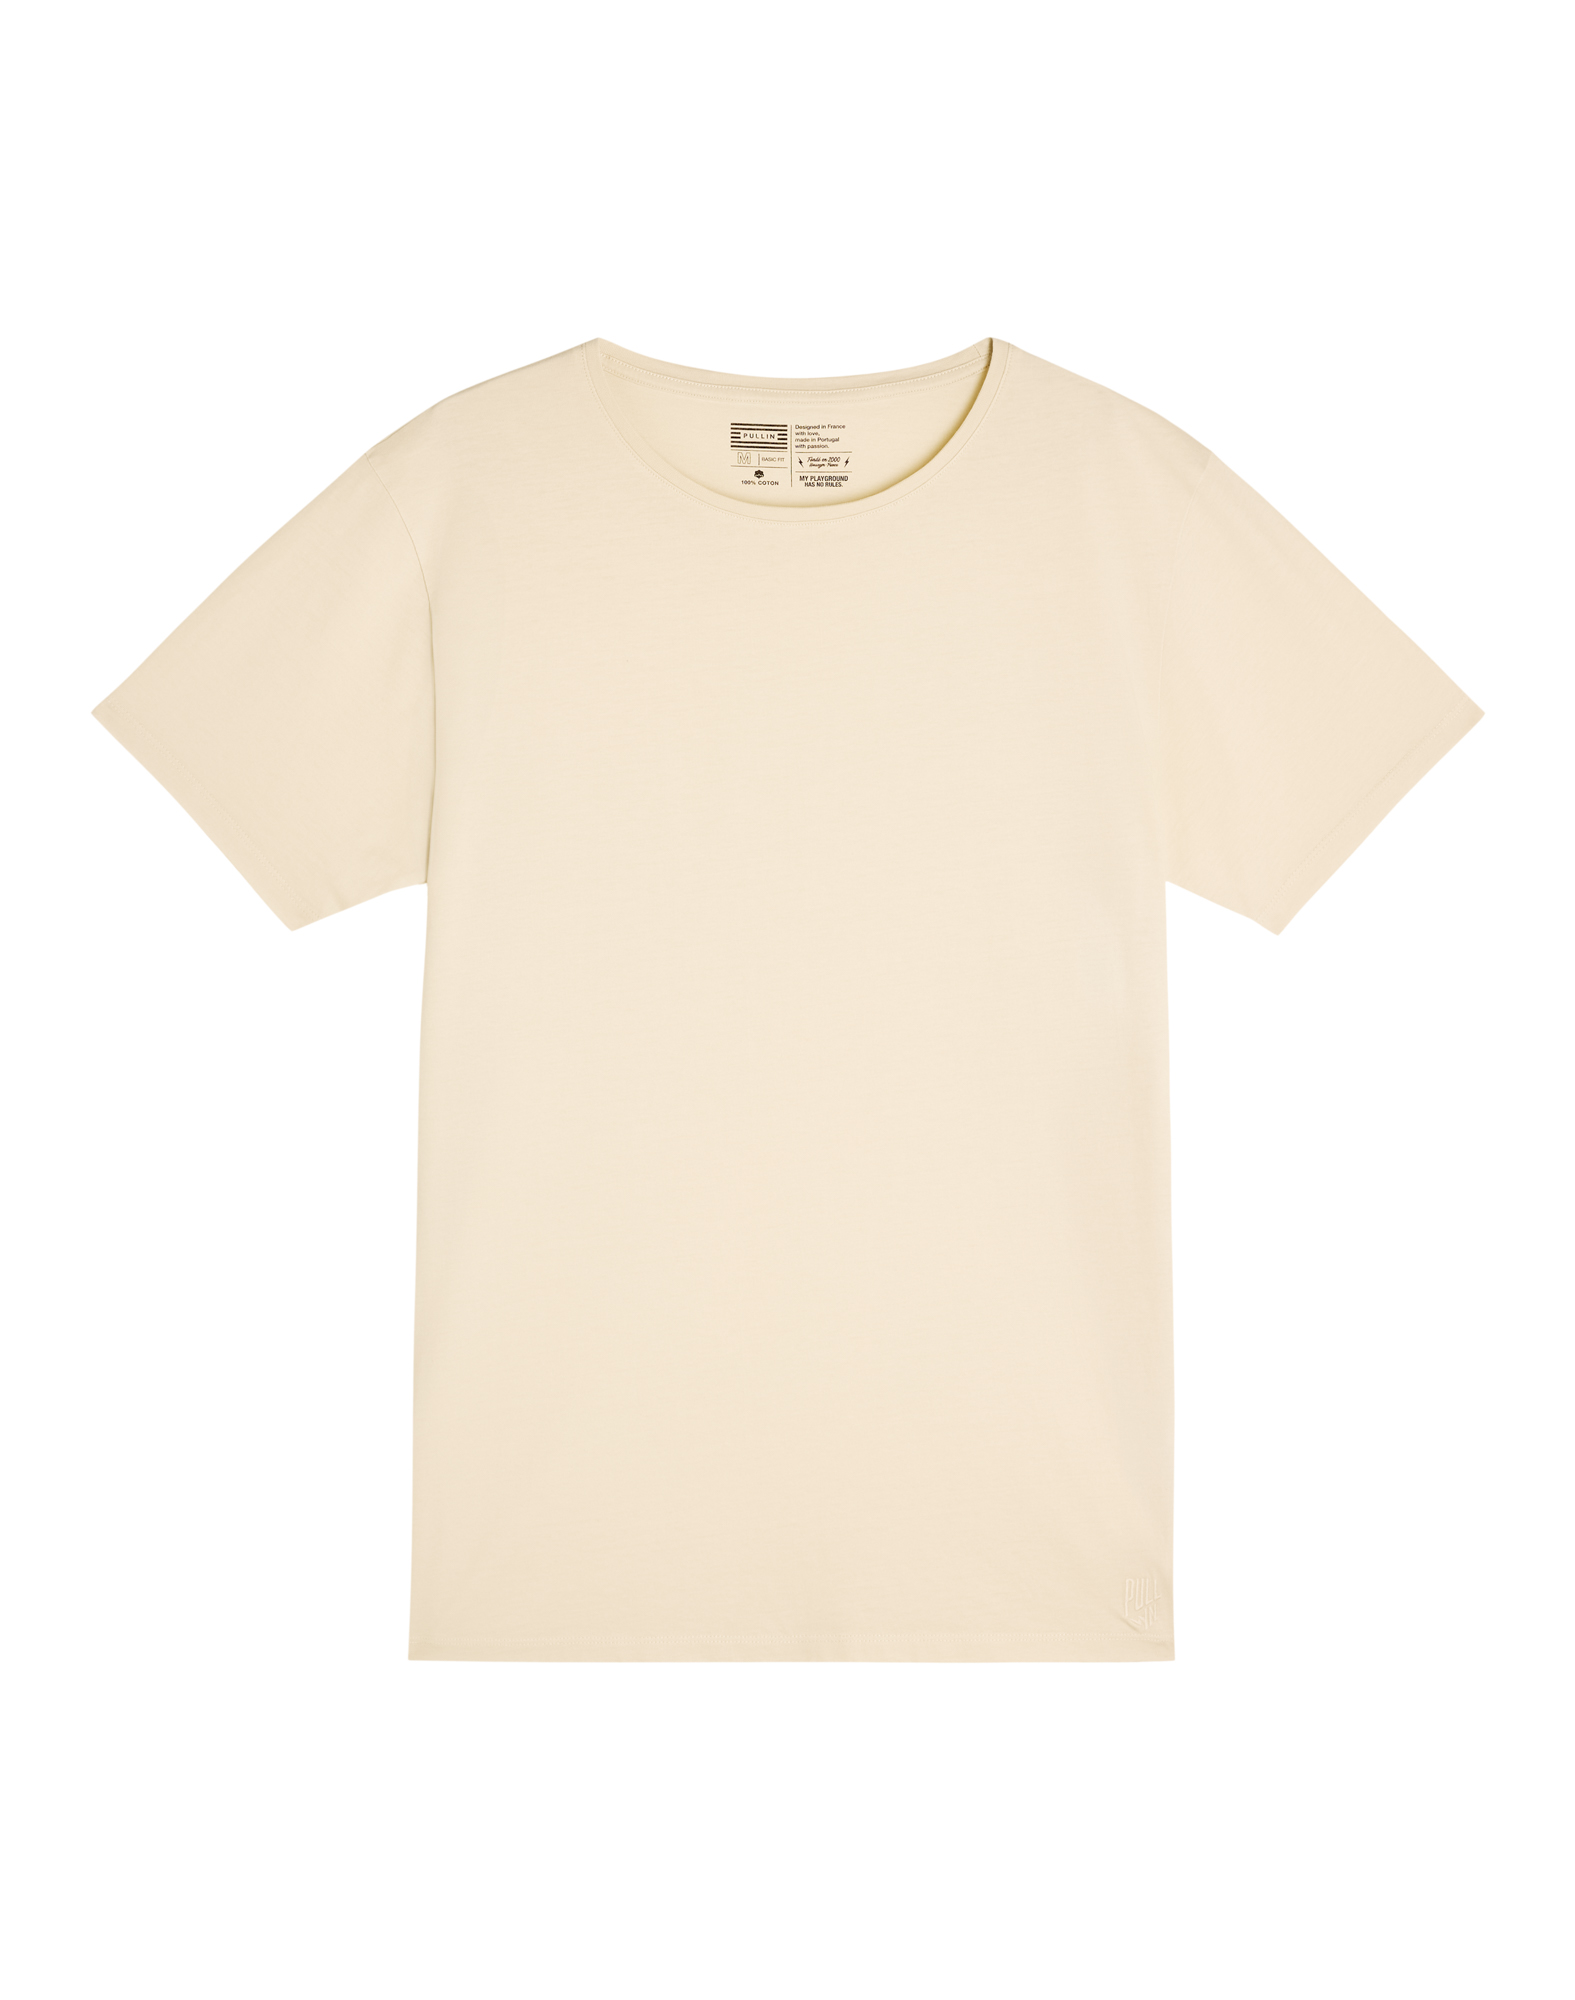 Men's t-shirt CLASSICDOVE23